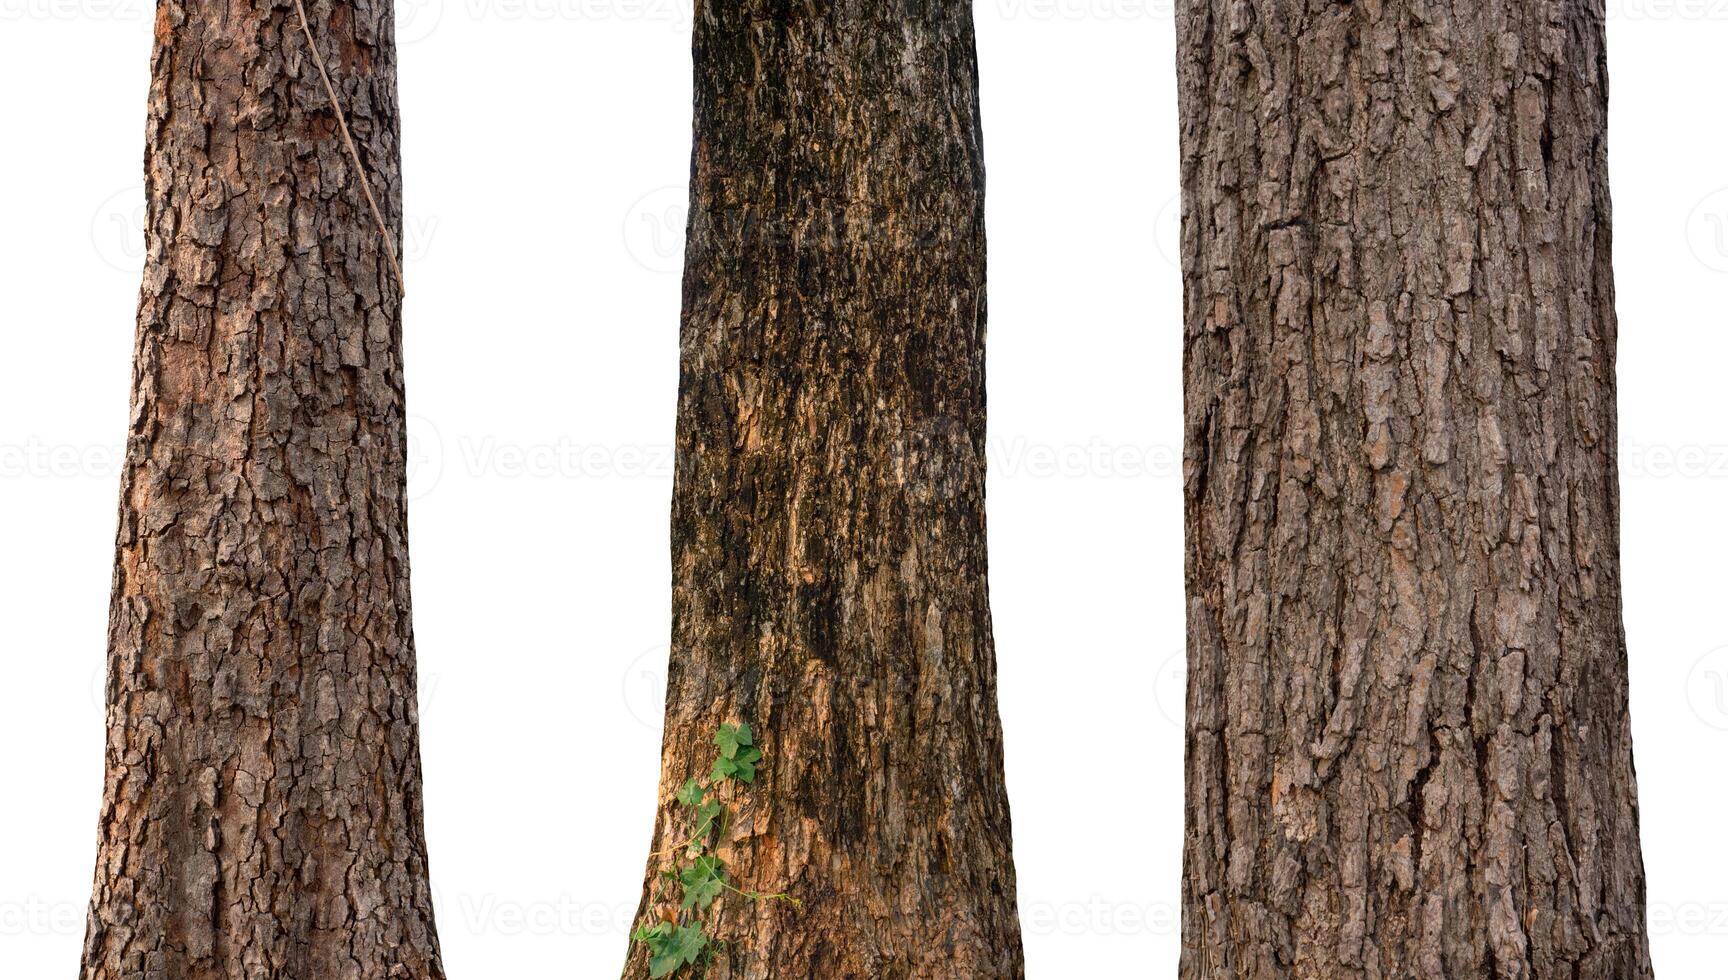 isolado árvore tronco coleção em branco pano de fundo foto